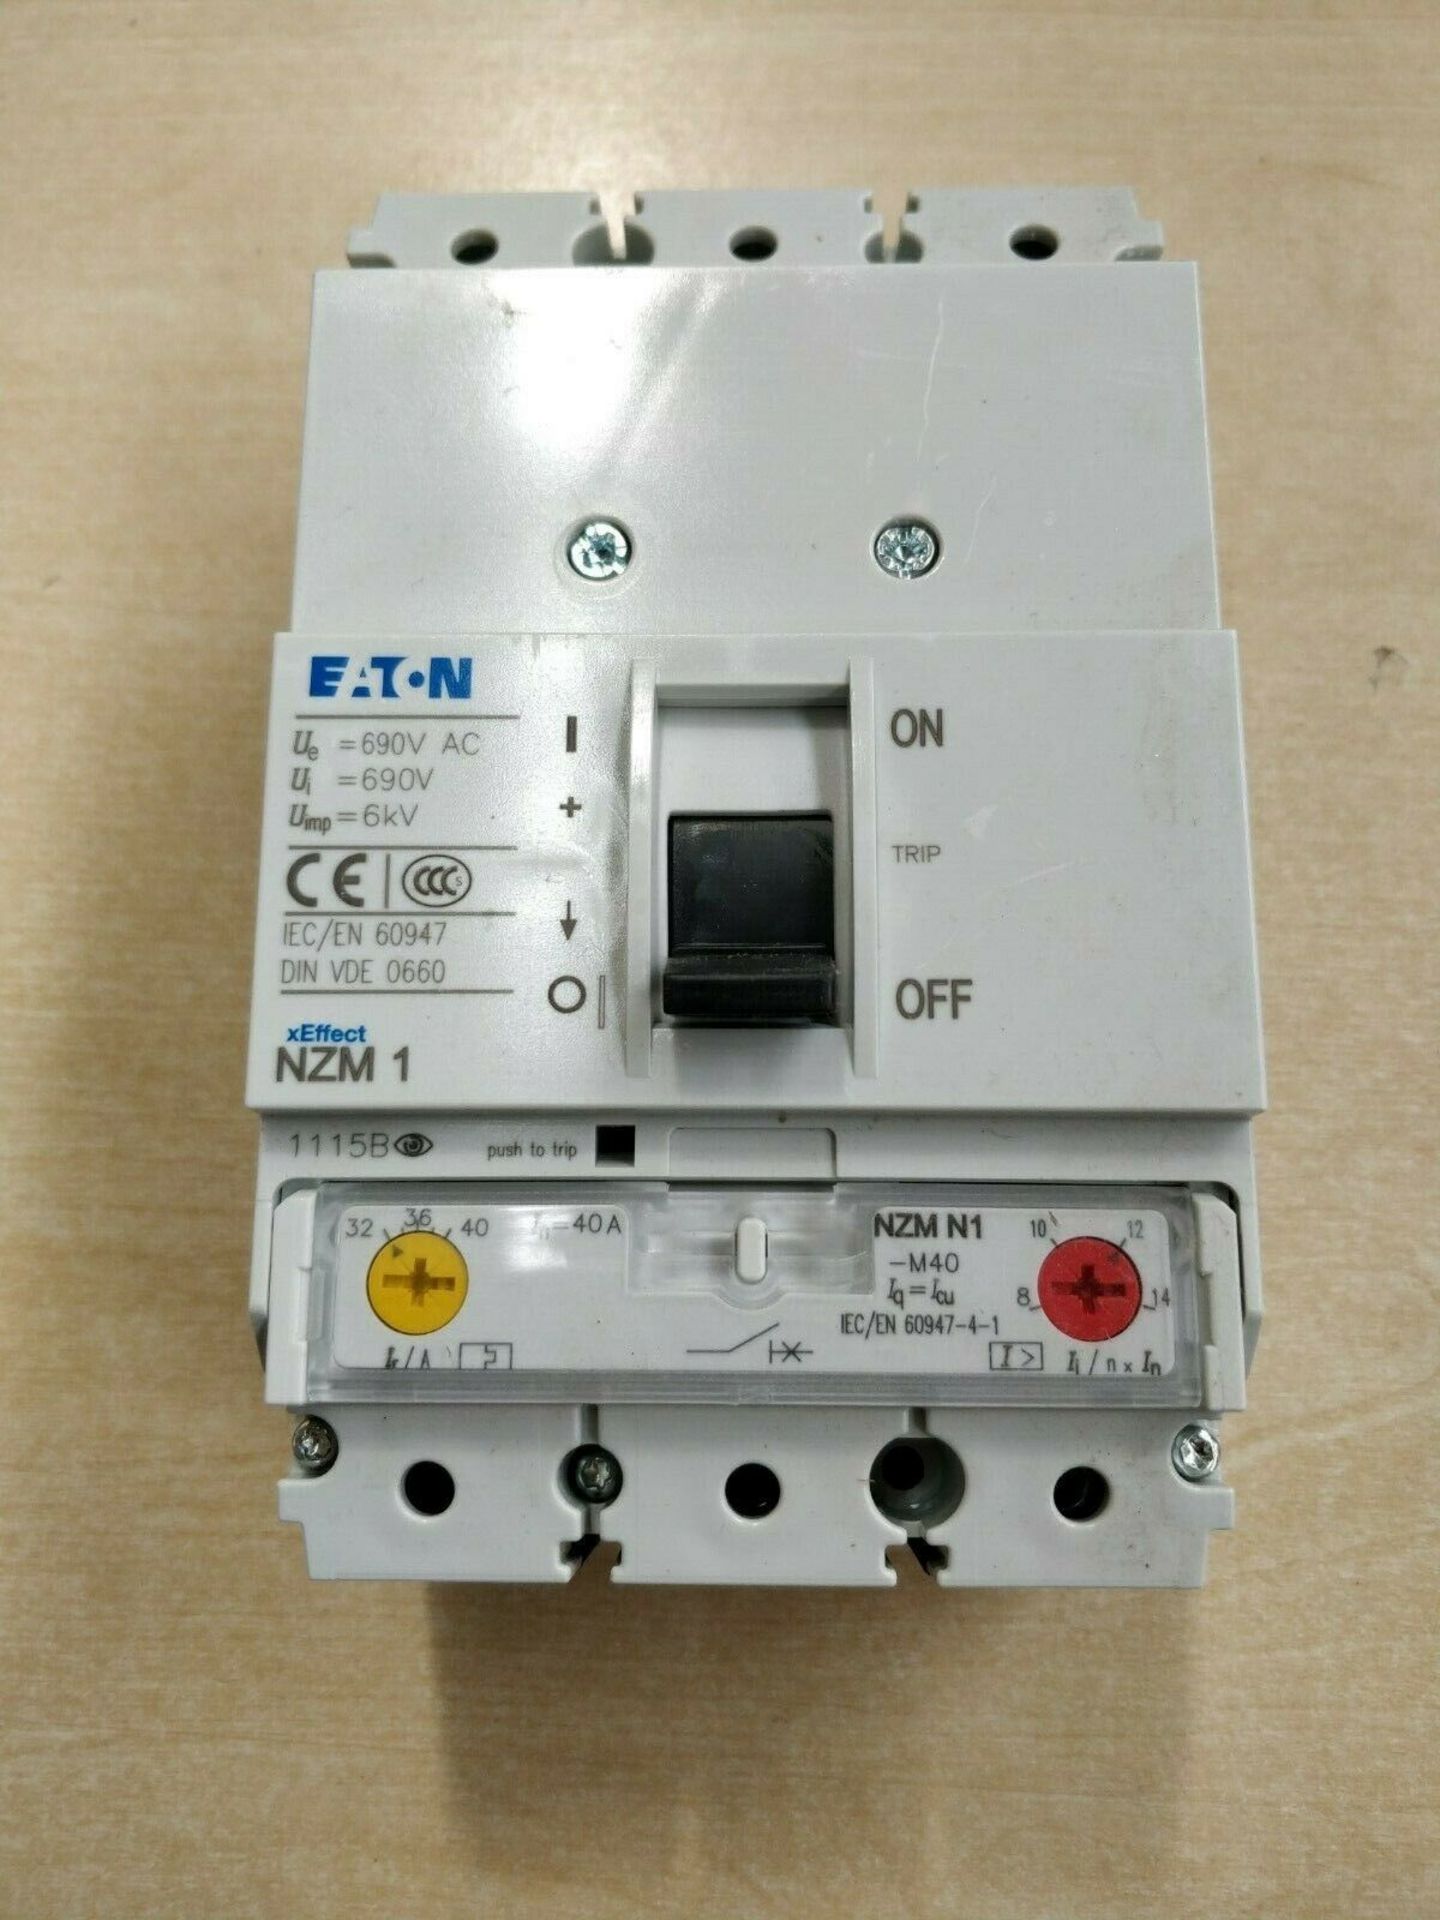 NZM N1-M40 265718 Eaton Circuit Breaker